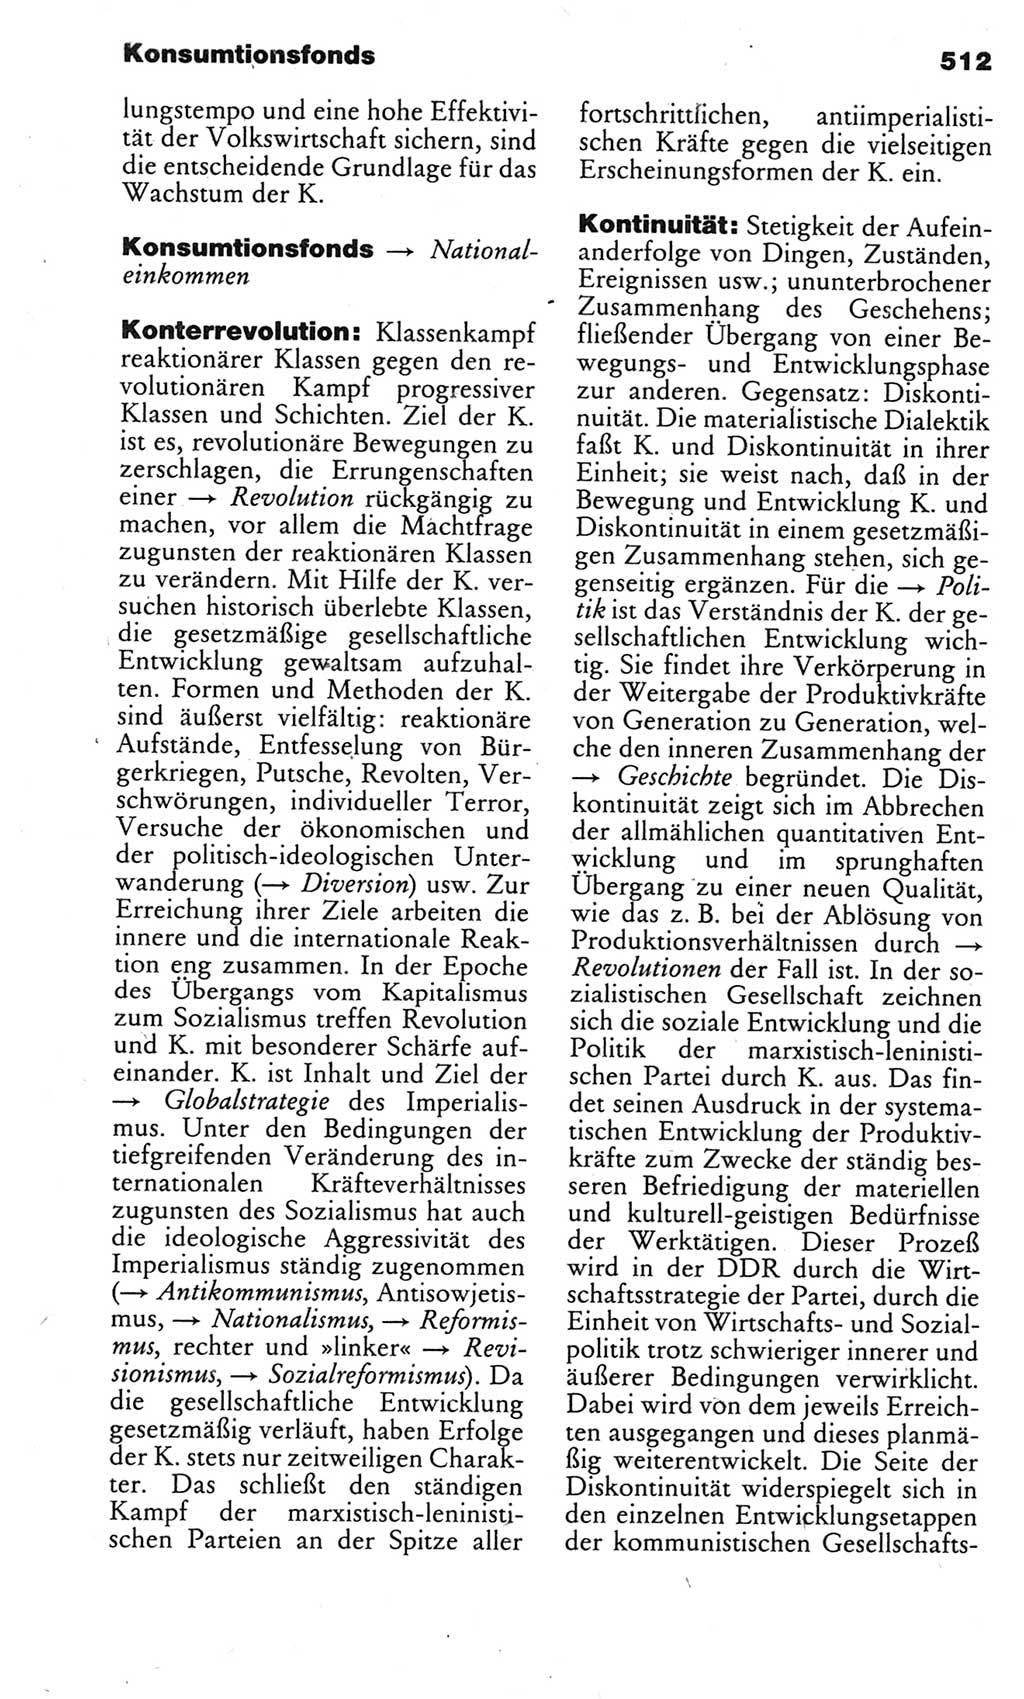 Kleines politisches Wörterbuch [Deutsche Demokratische Republik (DDR)] 1983, Seite 512 (Kl. pol. Wb. DDR 1983, S. 512)